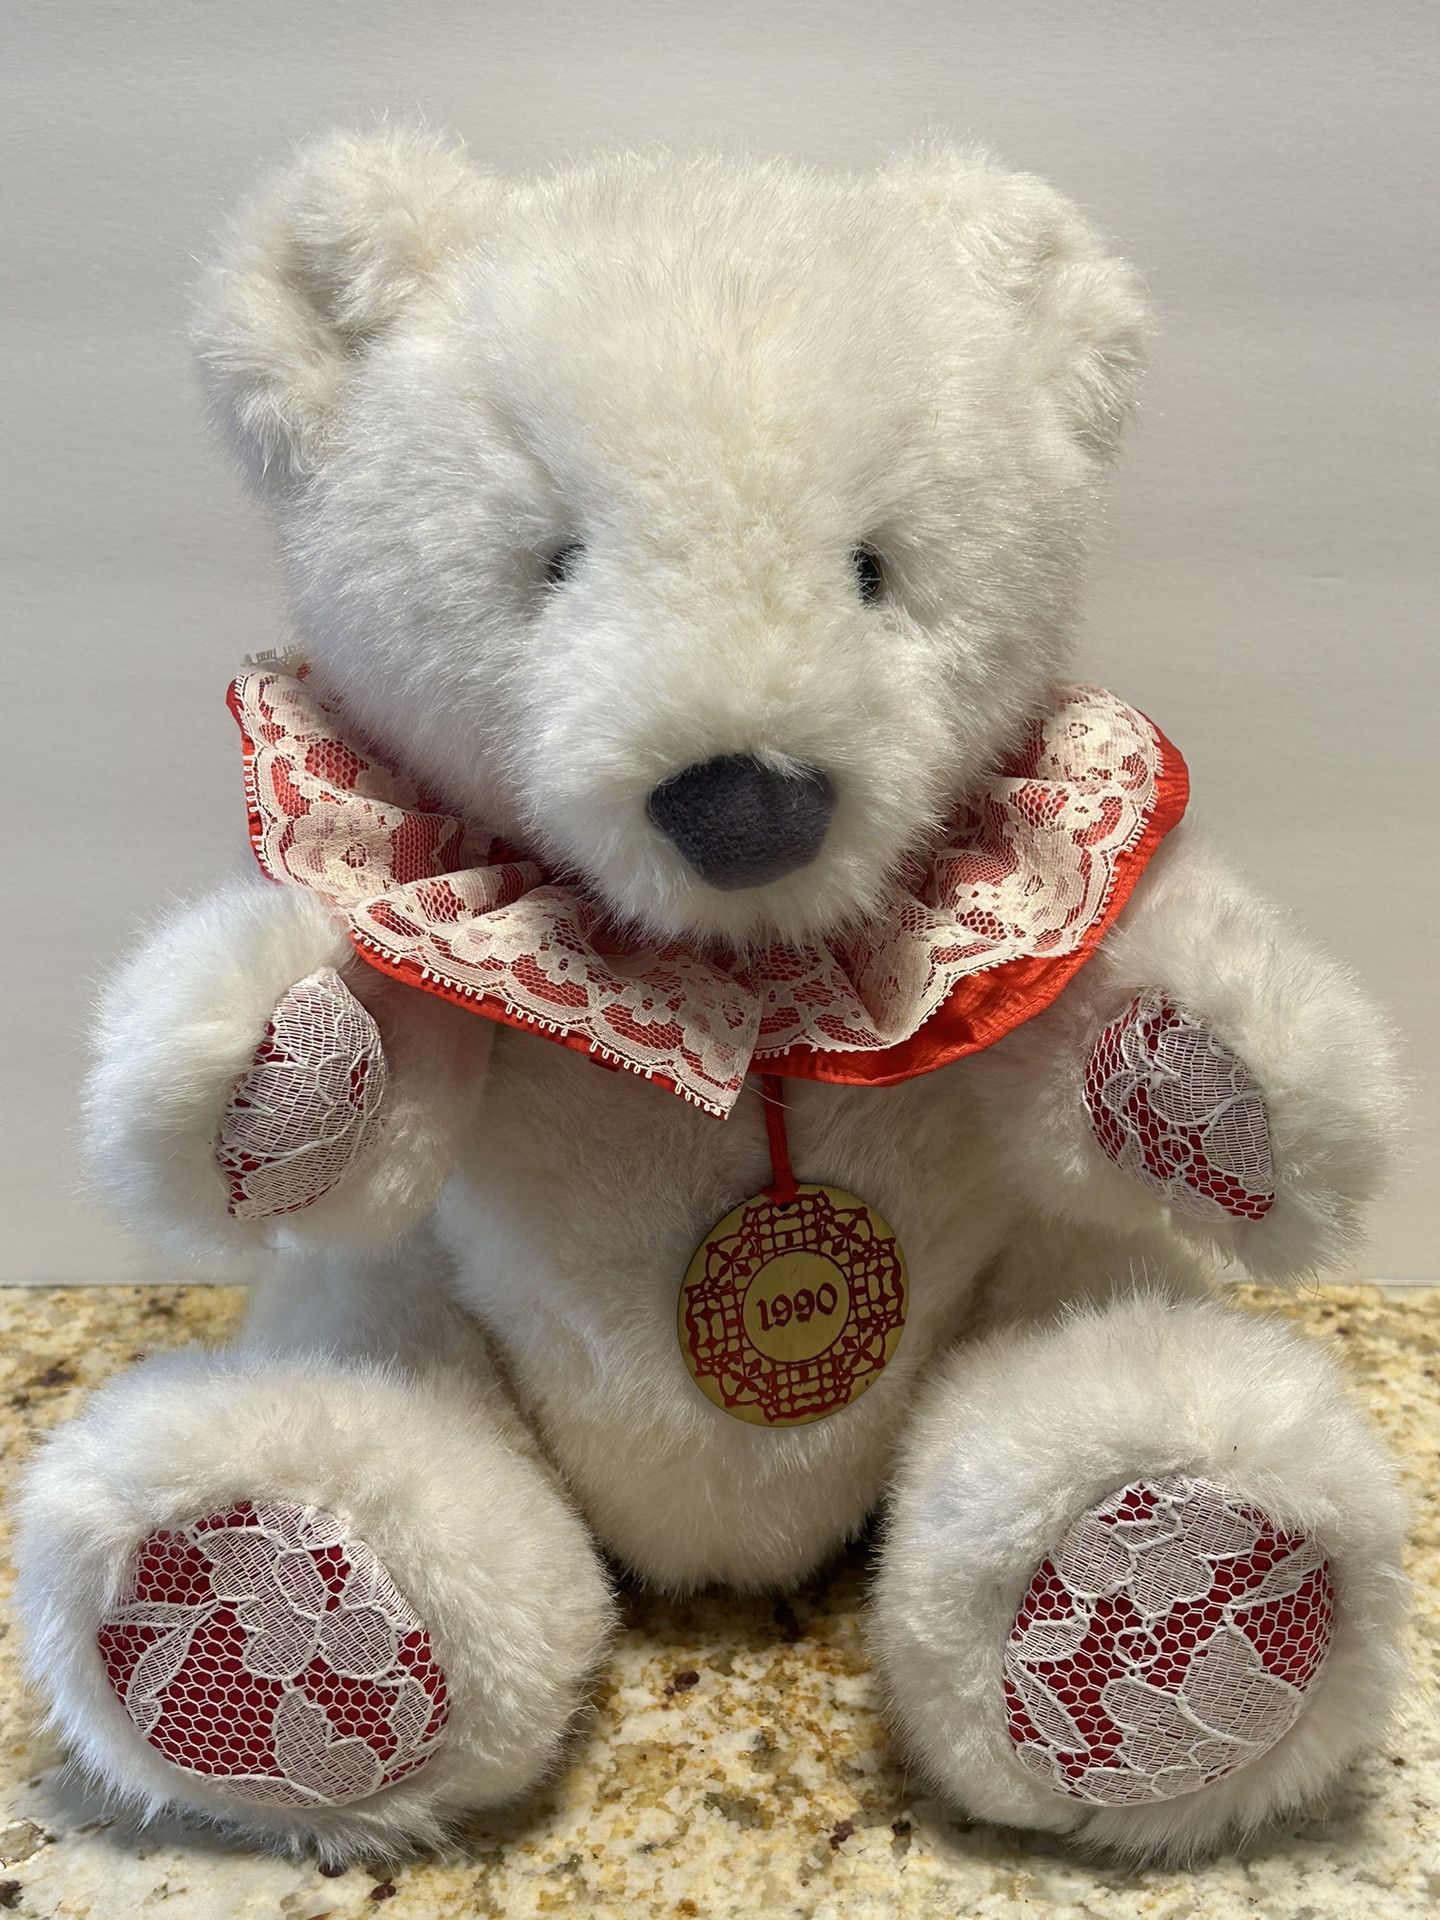 Teddy Bear 1990